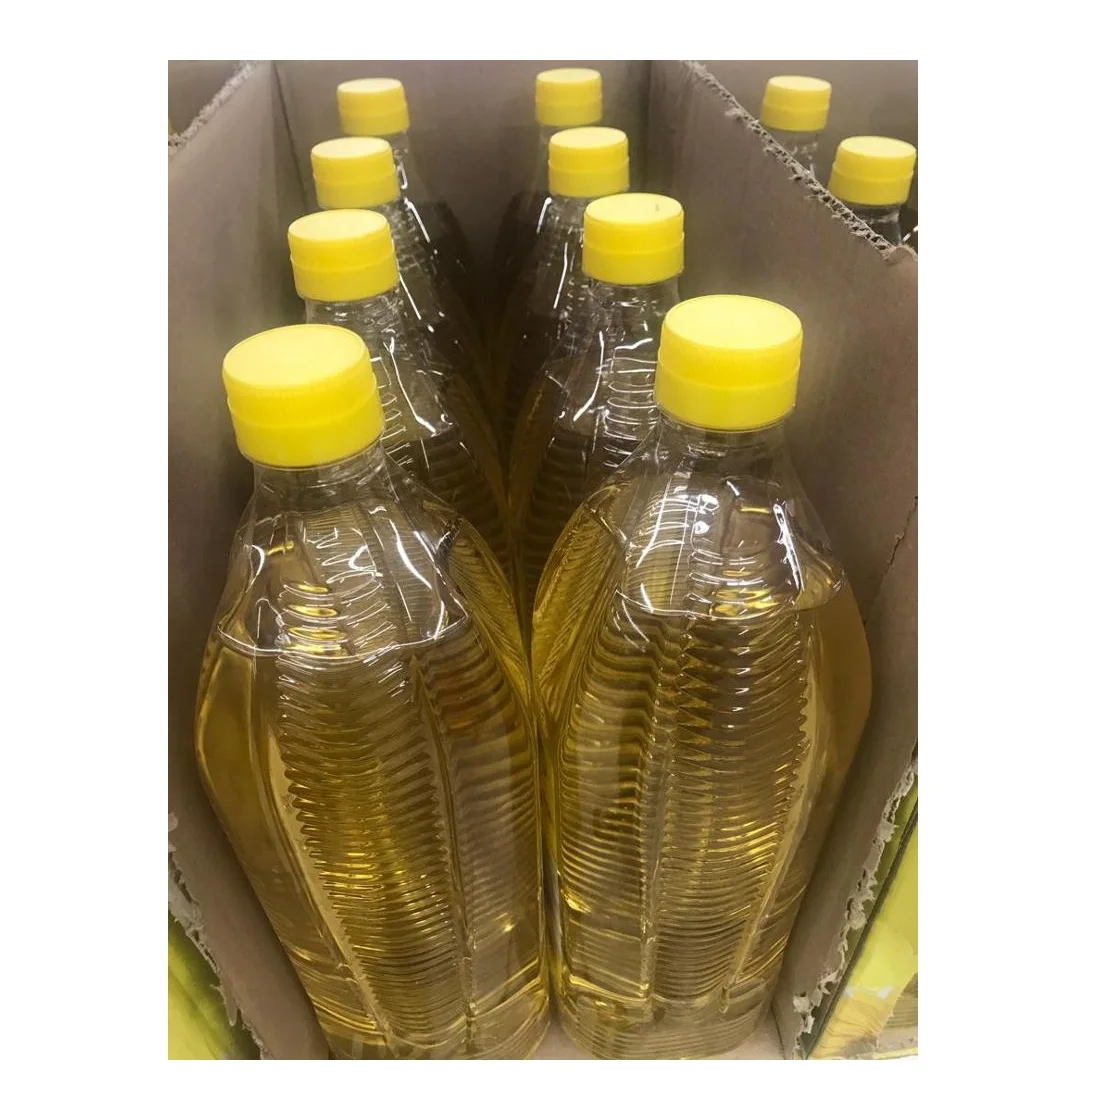 Тайское растительное масло.